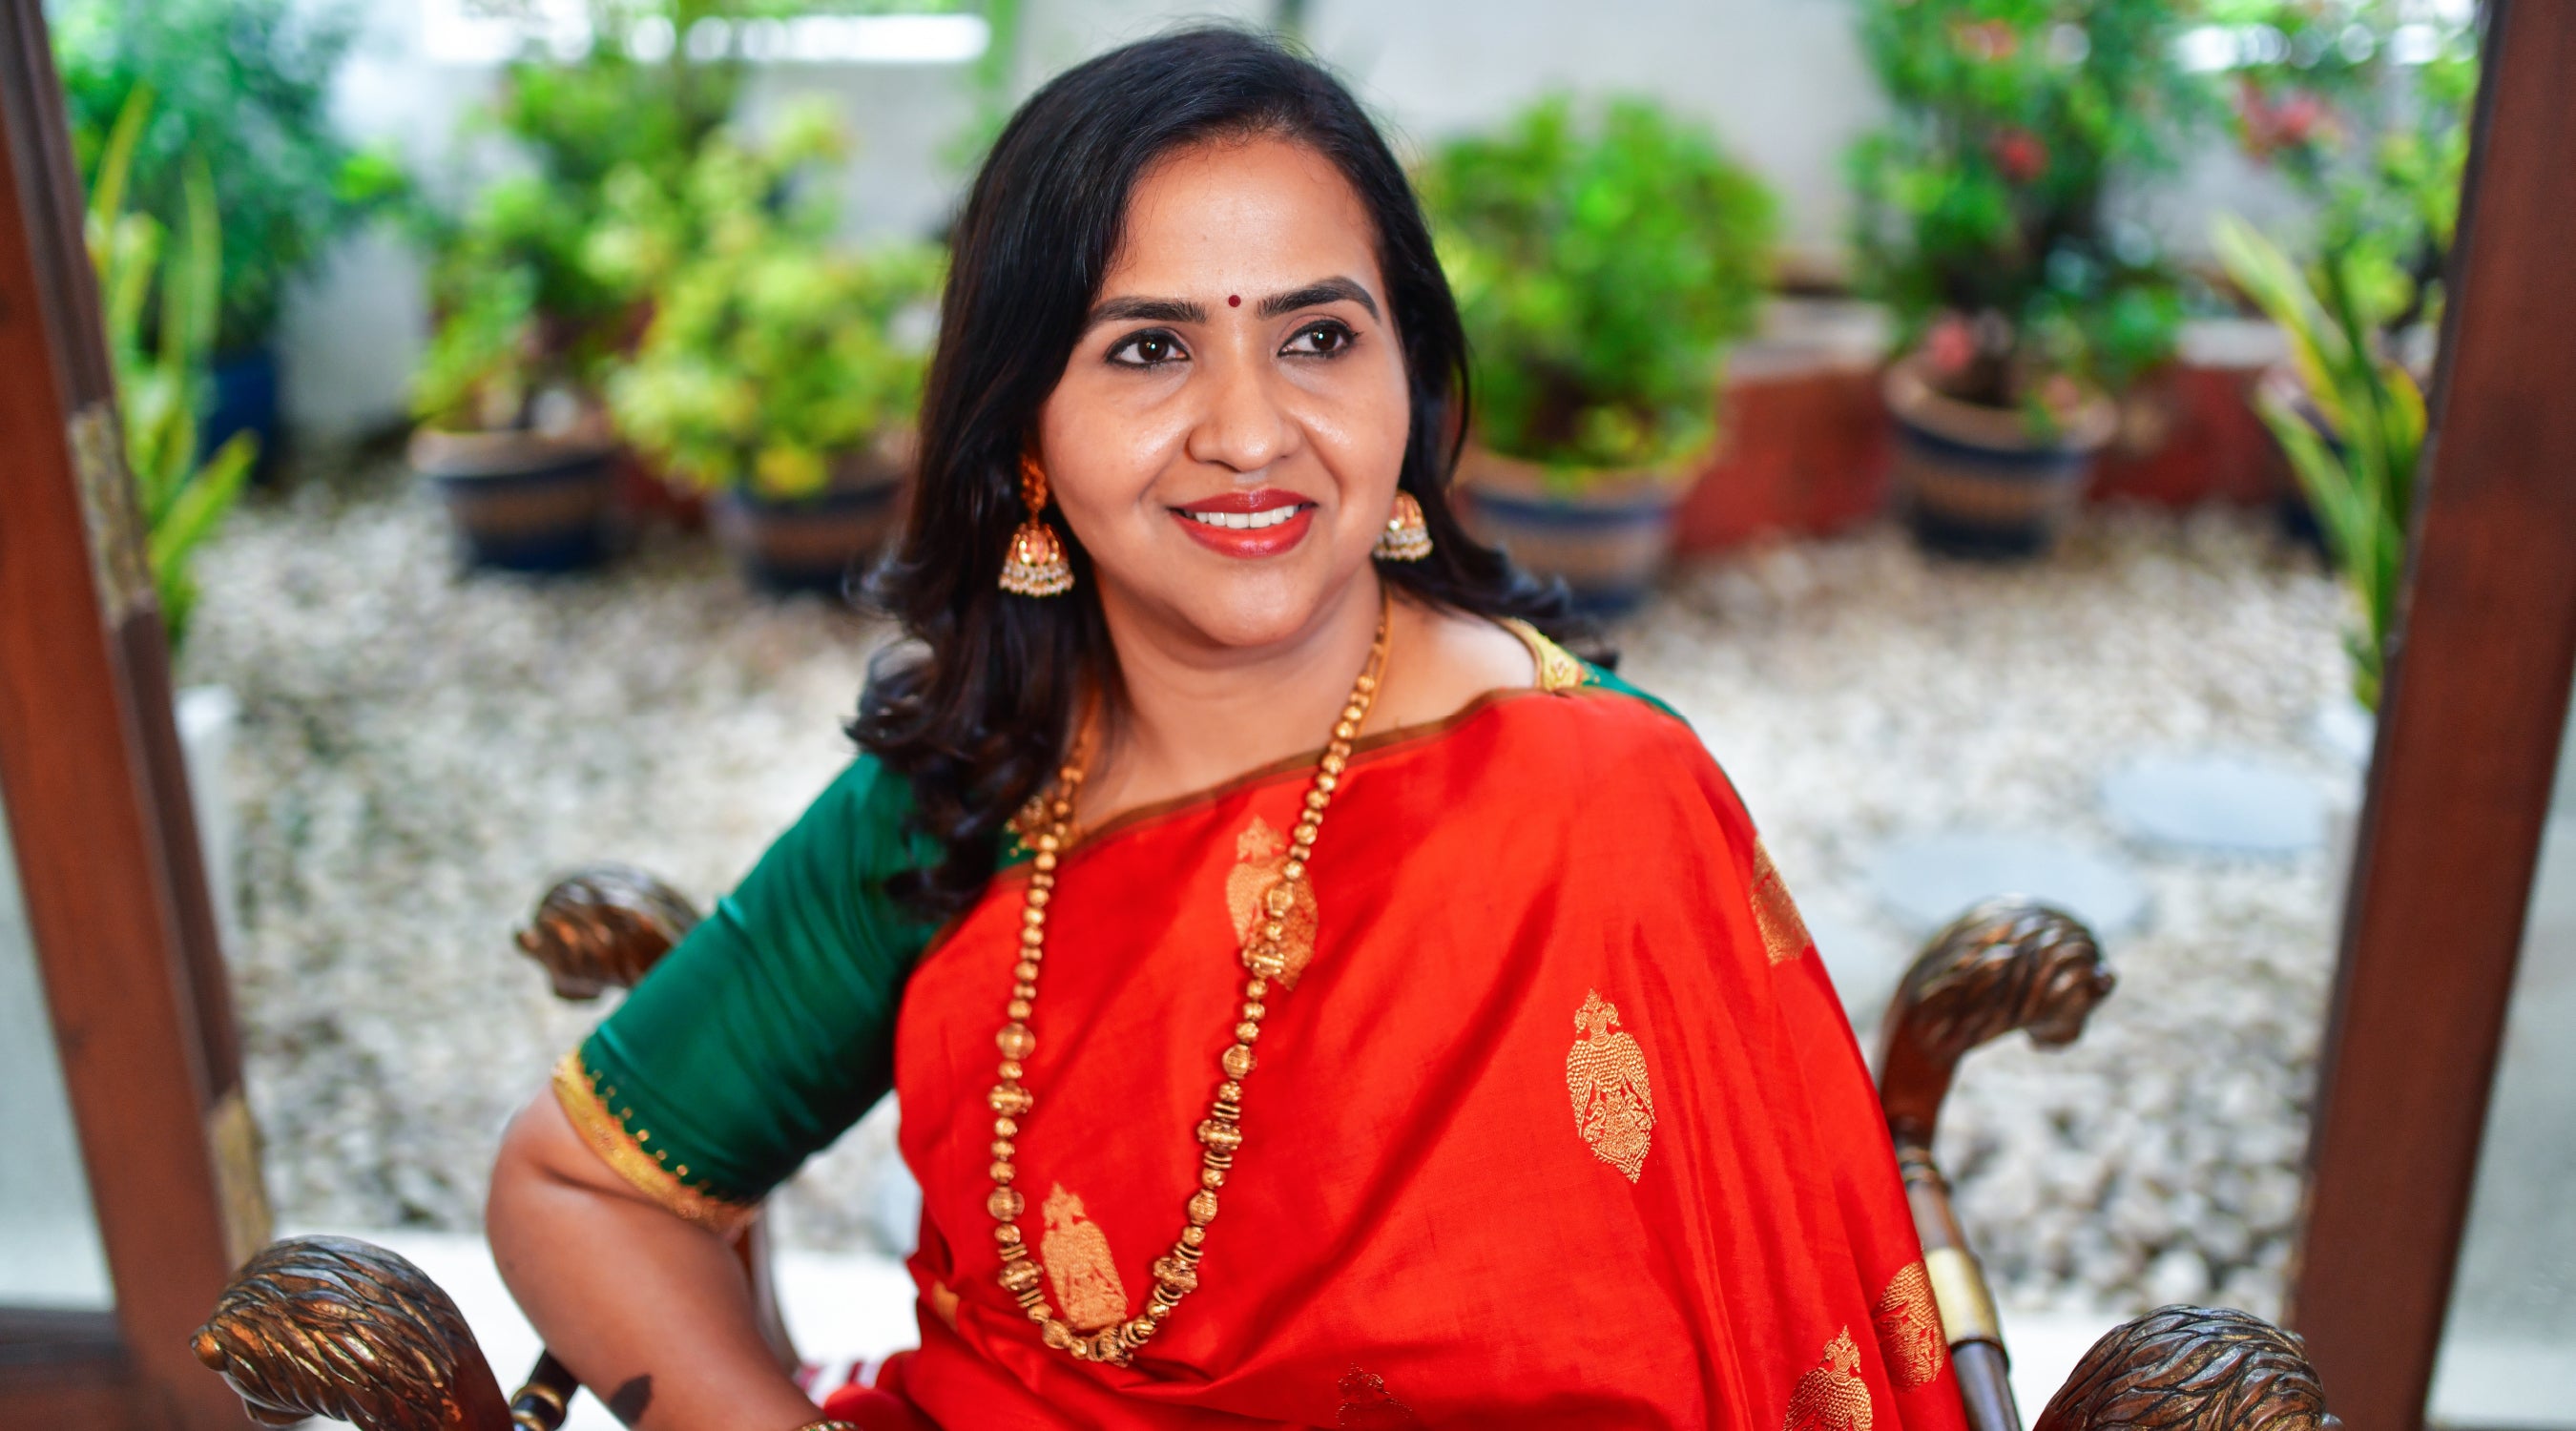 KANAKAVALLI VIGNETTES : Dr. Anuradha Ganesan - Inspired, Inspiring